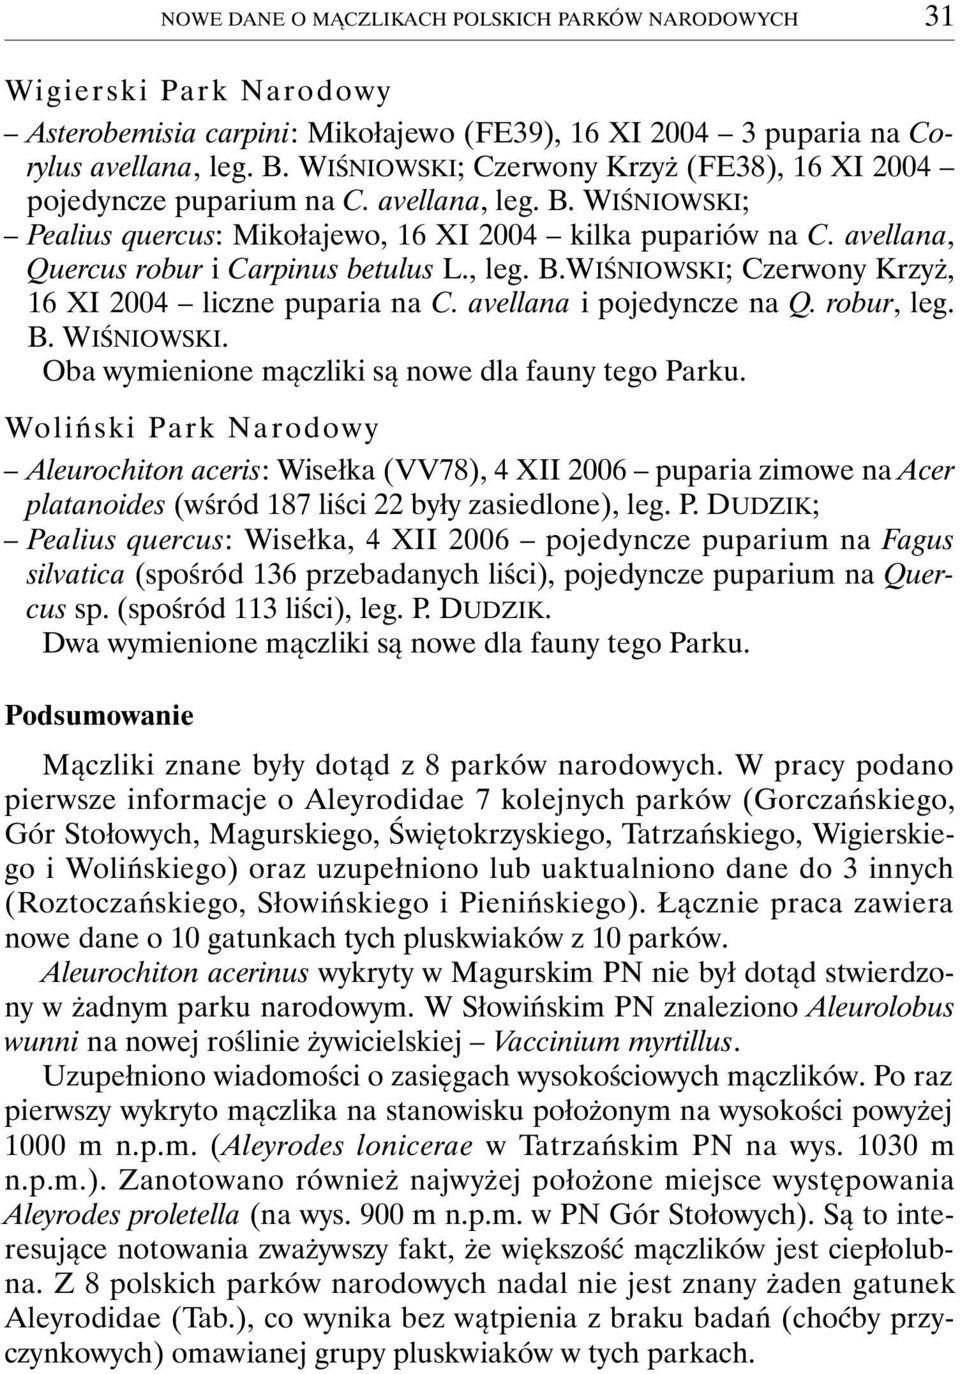 avellana, Quercus robur i Carpinus betulus L., leg. B.WIŚNIOWSKI; Czerwony Krzyż, 16 XI 2004 liczne puparia na C. avellana i pojedyncze na Q. robur, leg. B. WIŚNIOWSKI.